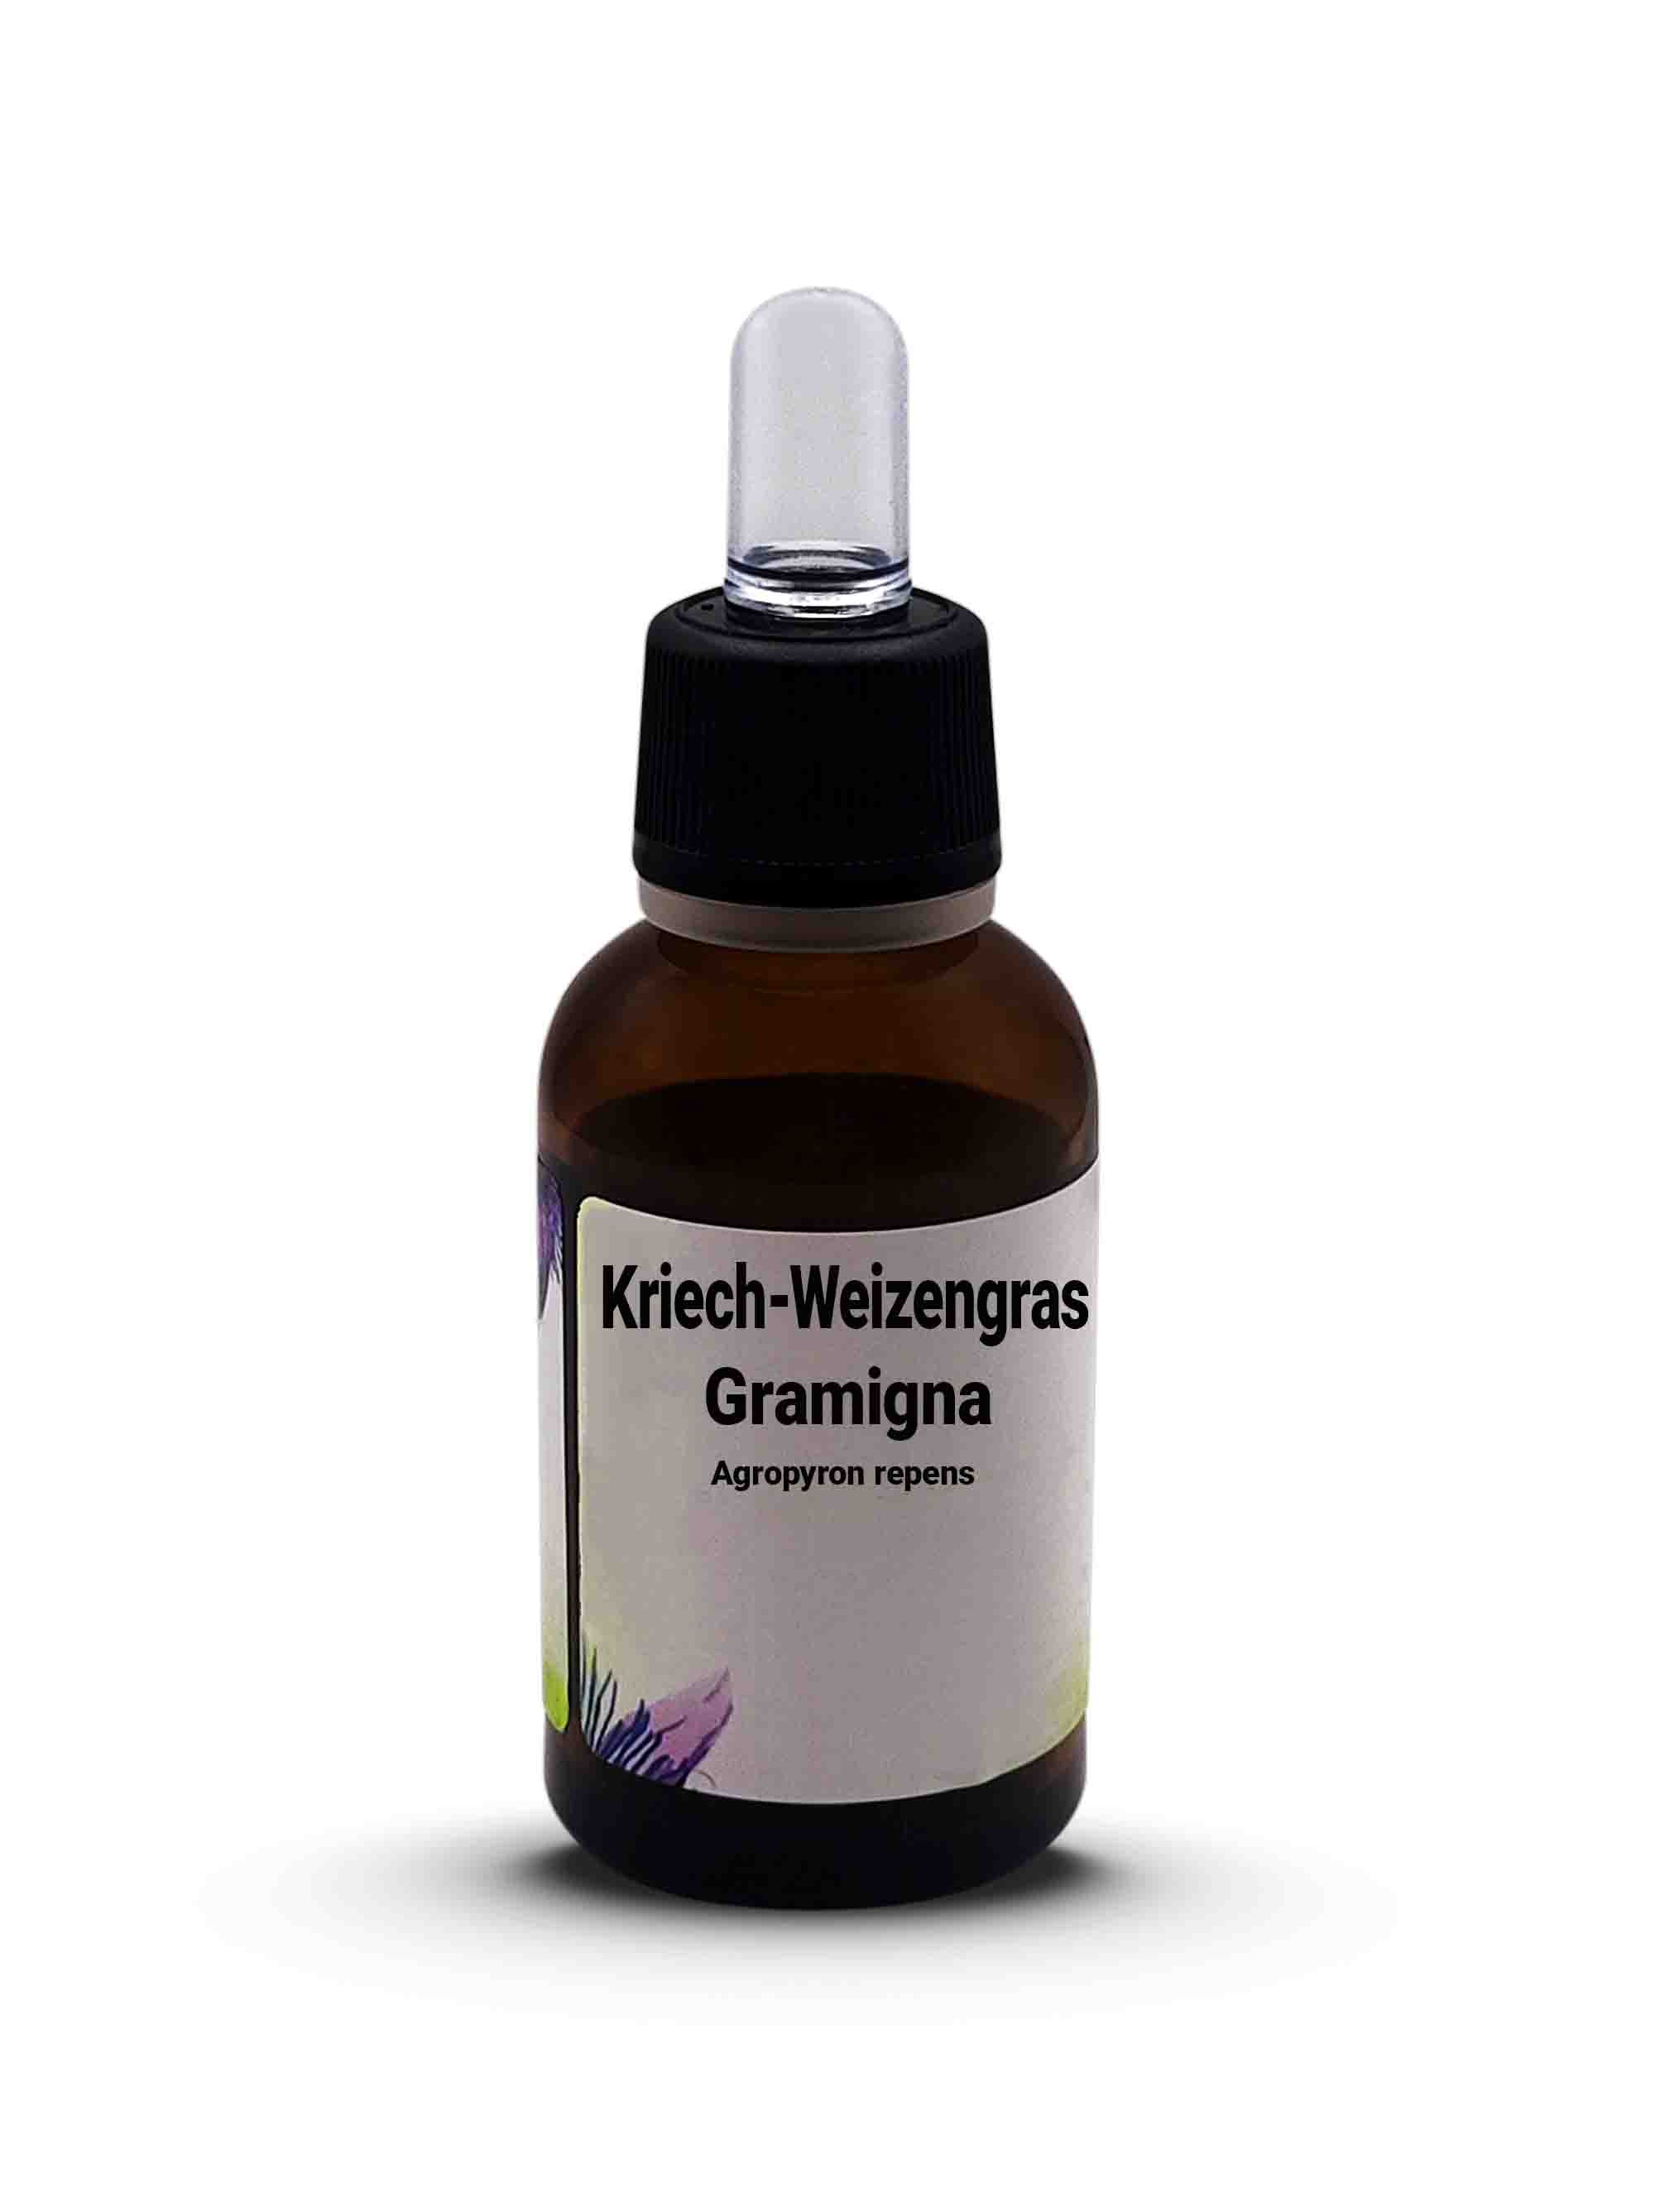 Kriech-Weizengras  Gramigna - Agropyron repens 30 ml